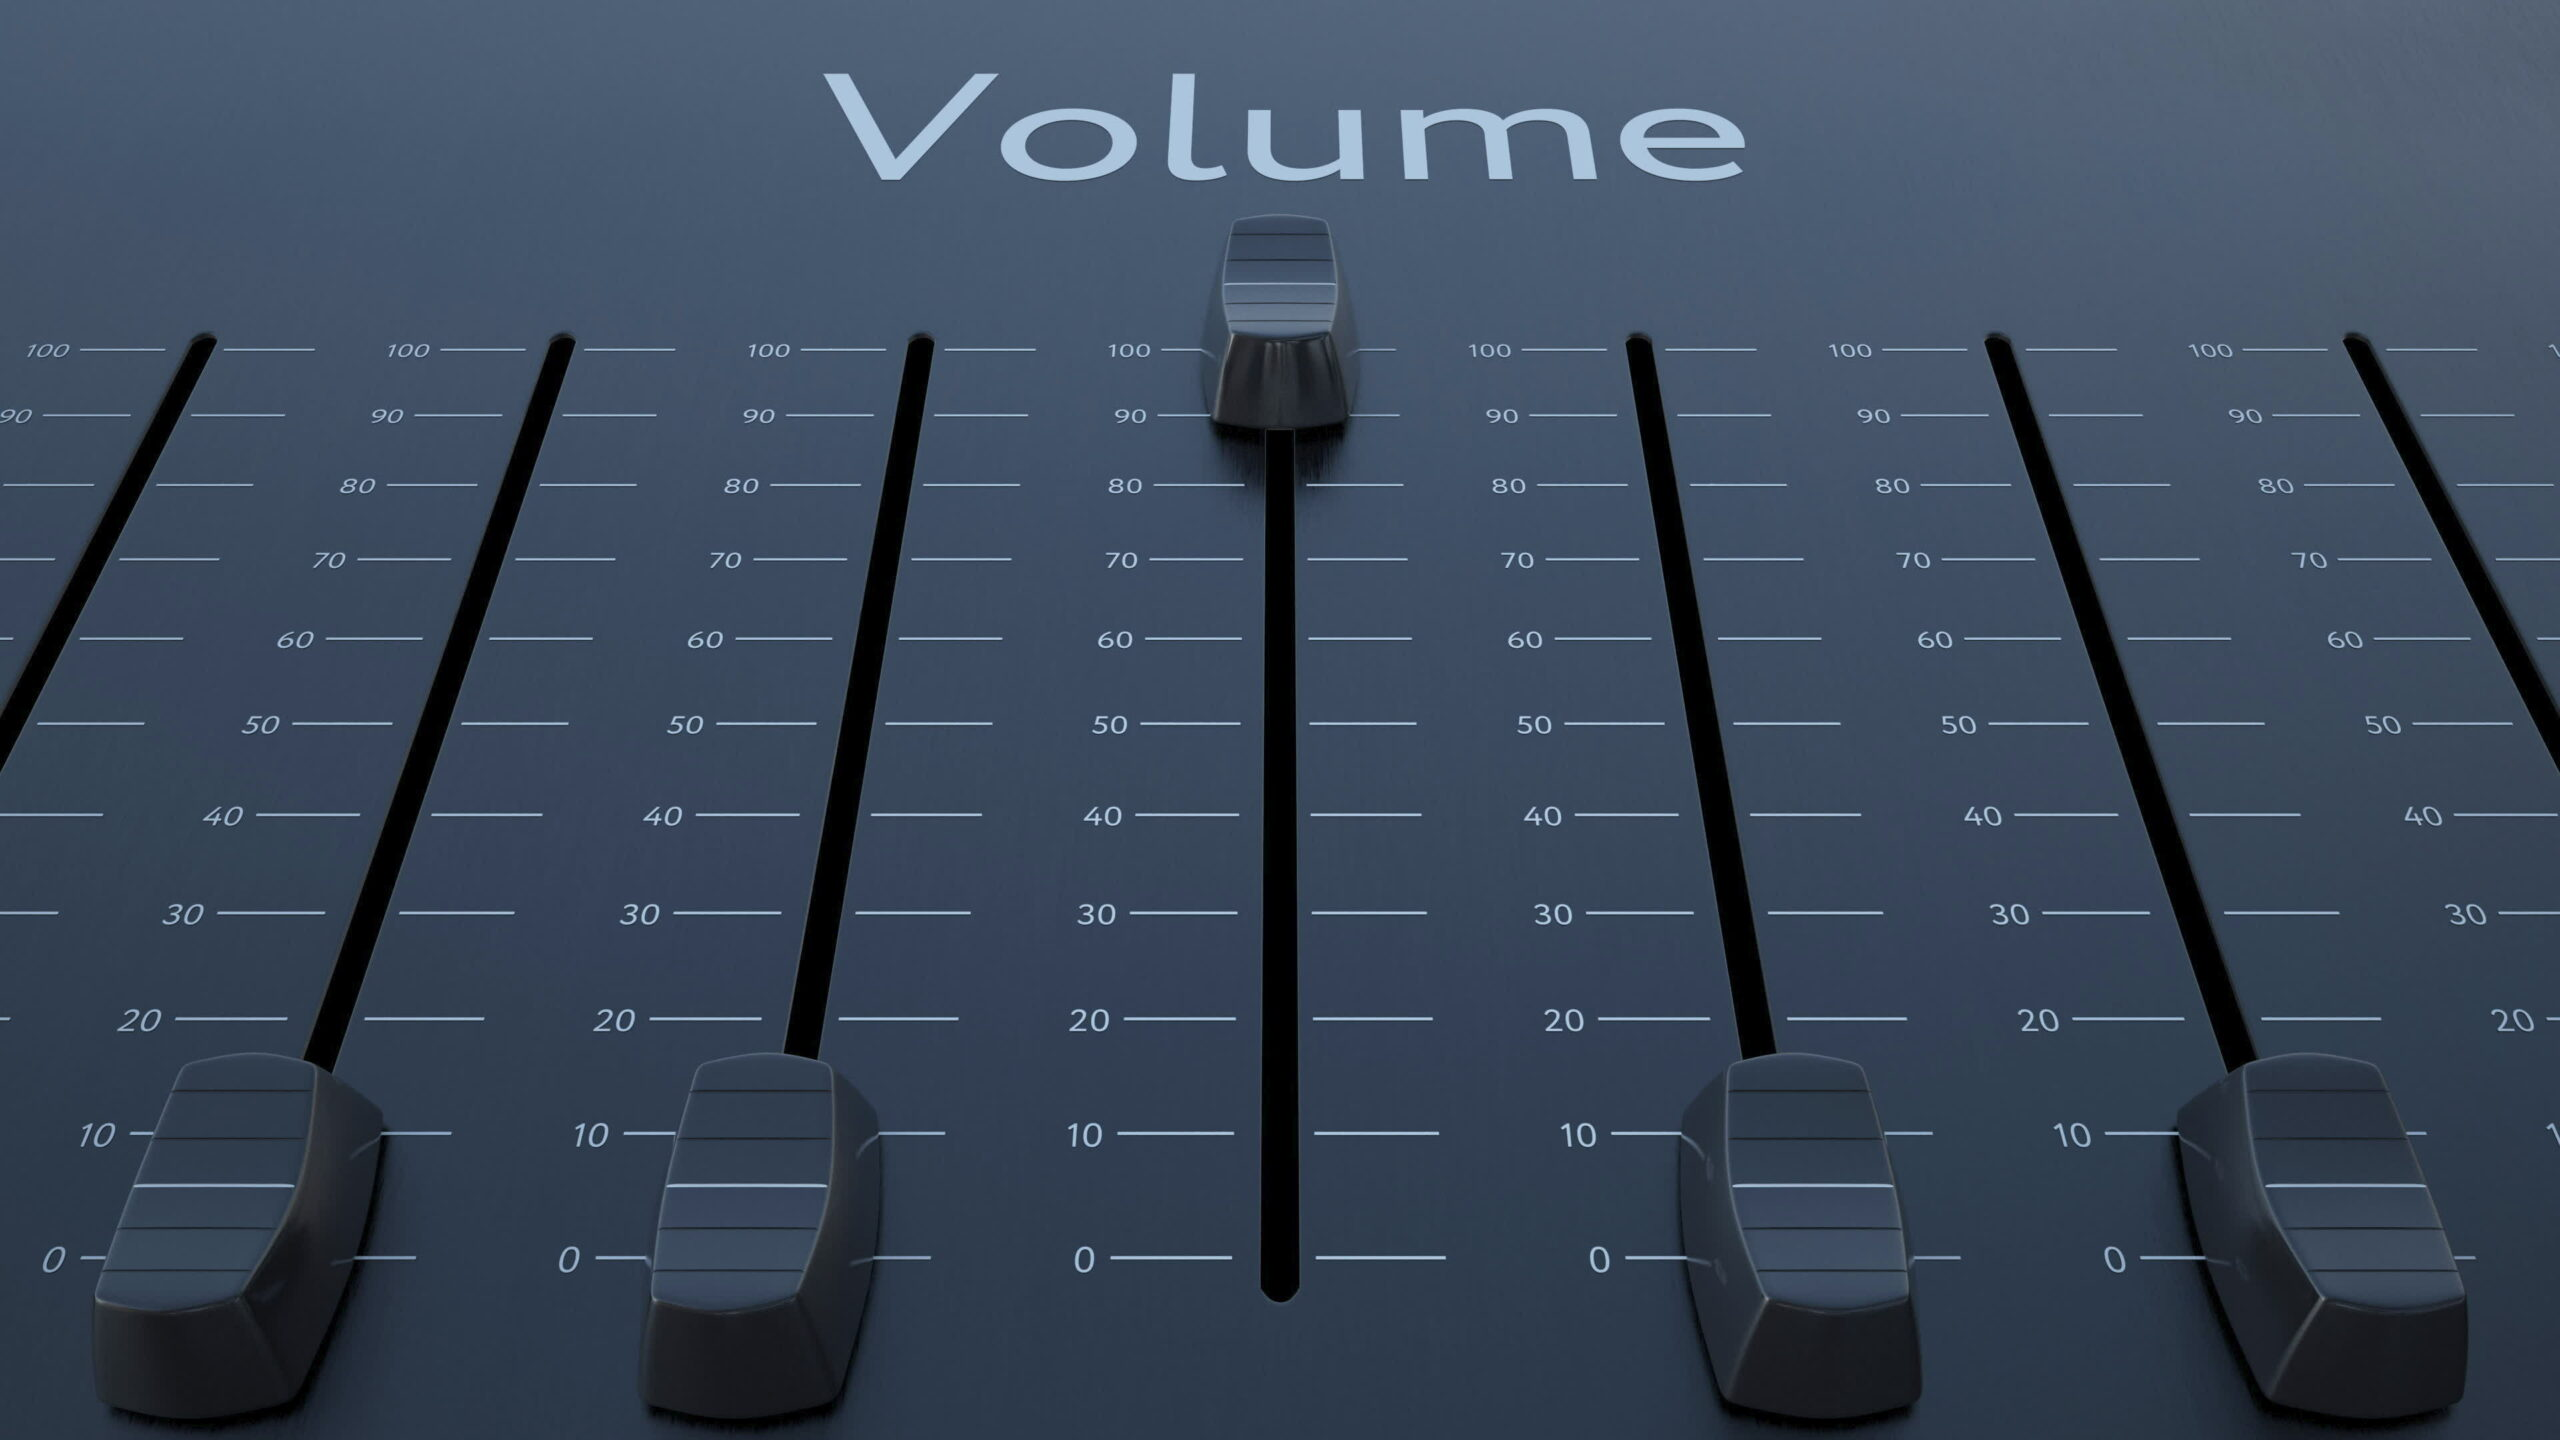 Volume-Slide-Dial-Set-To-Maximum-Level